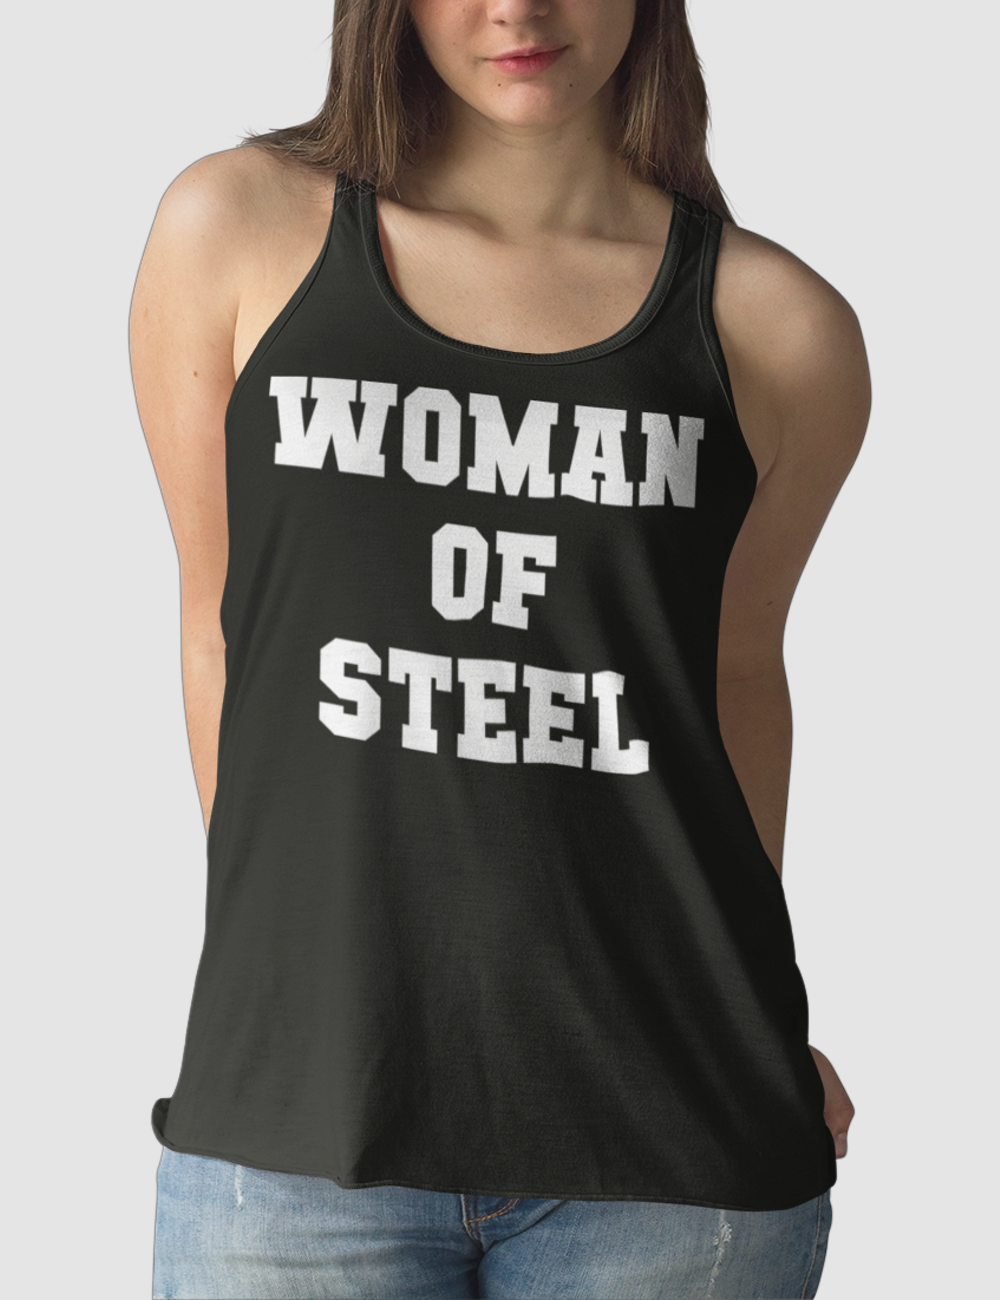 Woman Of Steel Women's Cut Racerback Tank Top OniTakai